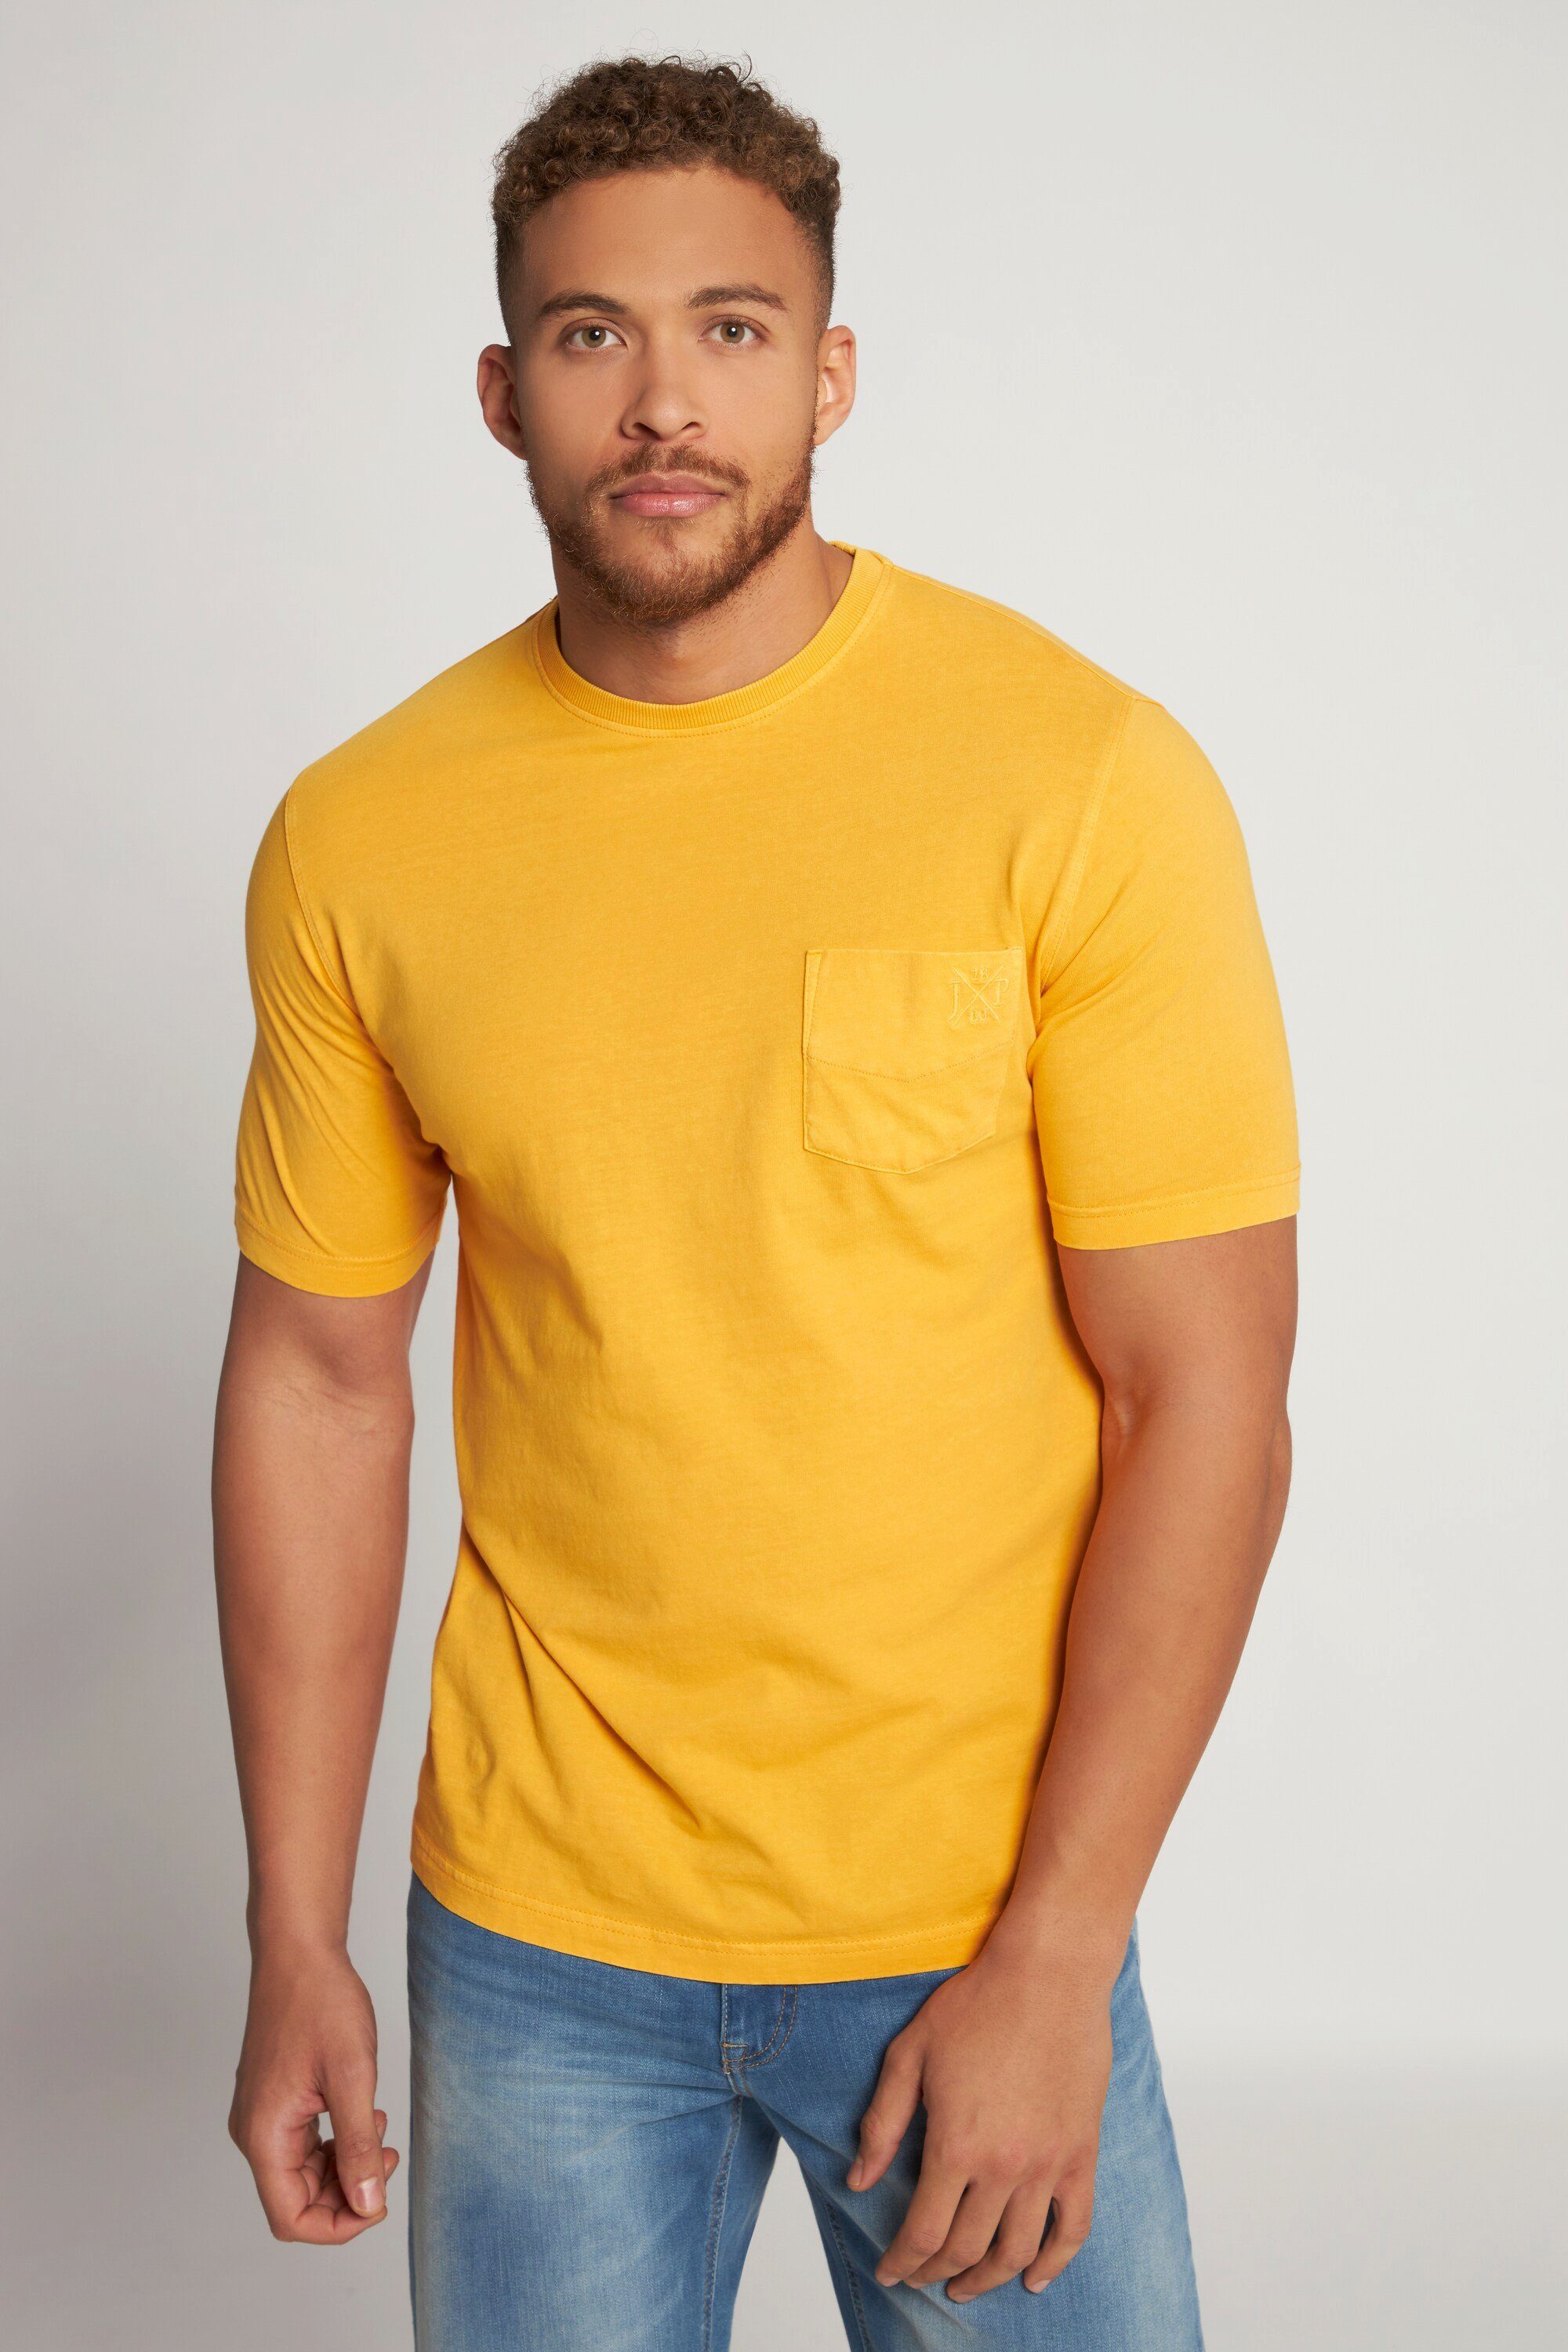 JP1880 Rundhals T-Shirt Halbarm T-Shirt Brusttasche orange